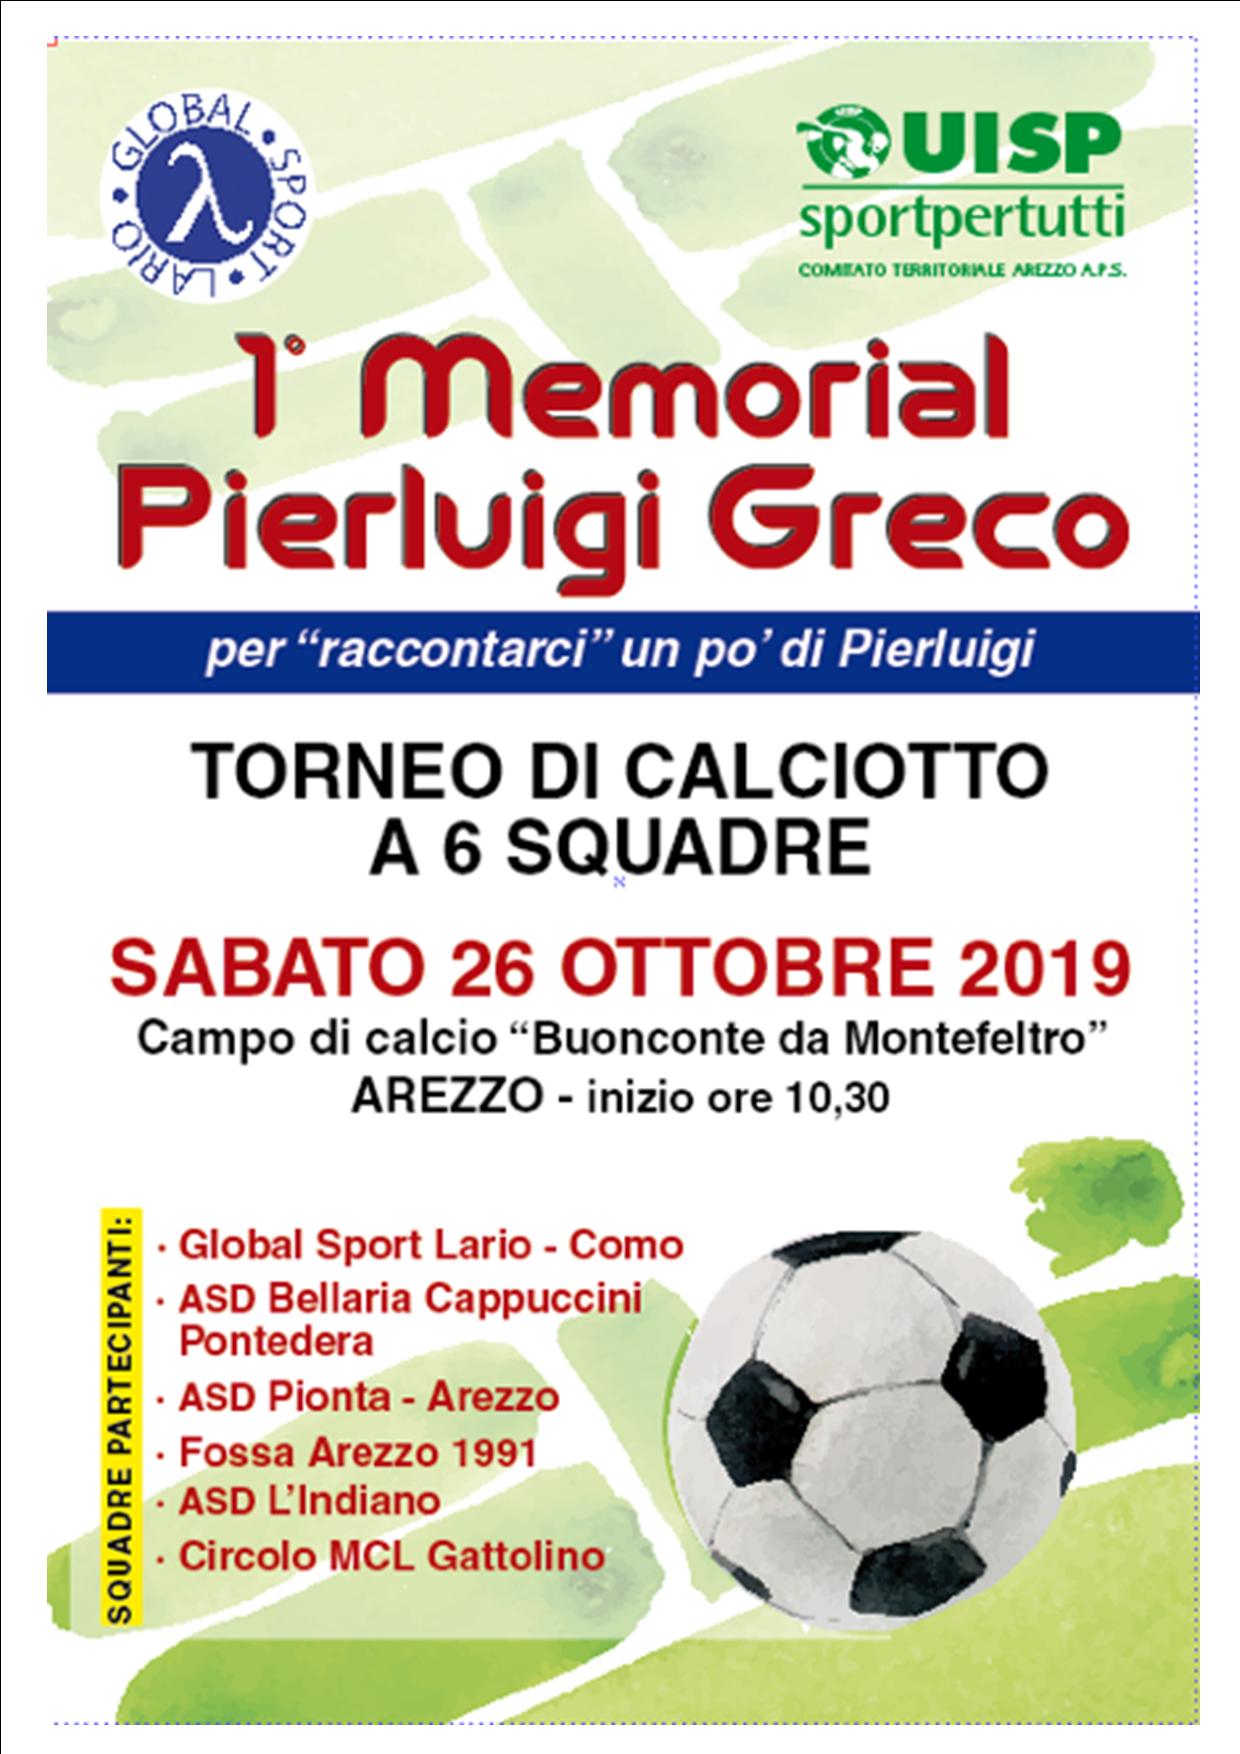 Global sport Lario: I memorial Pierluigi Greco